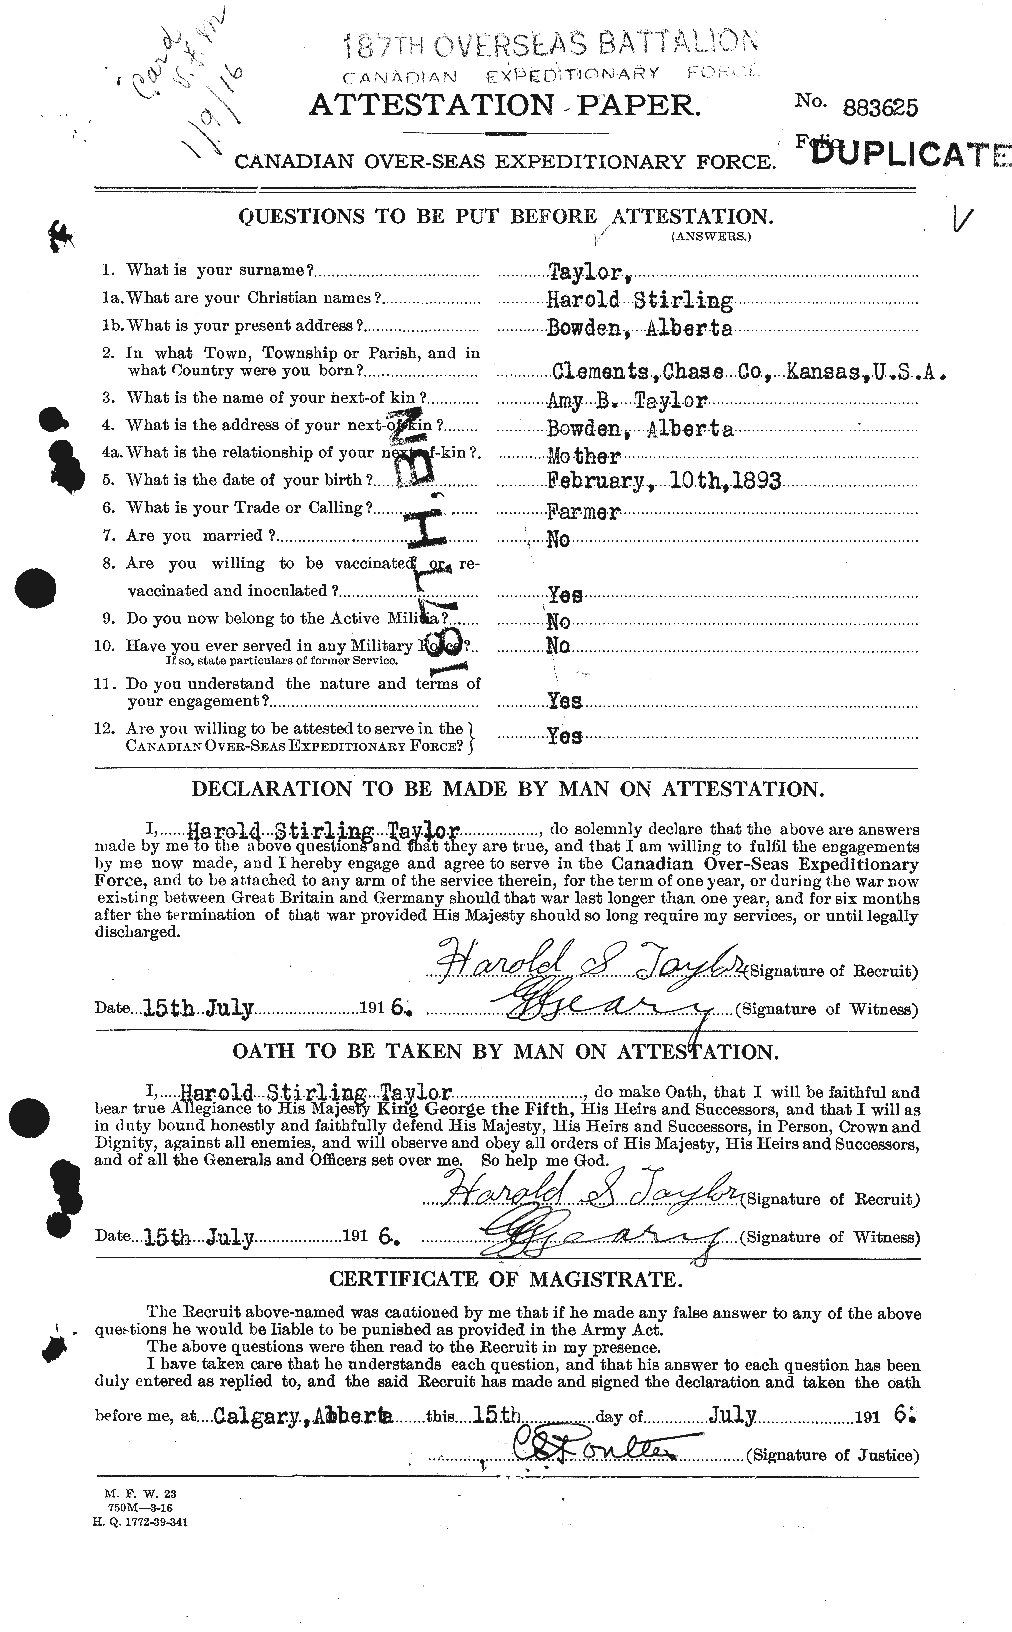 Dossiers du Personnel de la Première Guerre mondiale - CEC 626434a